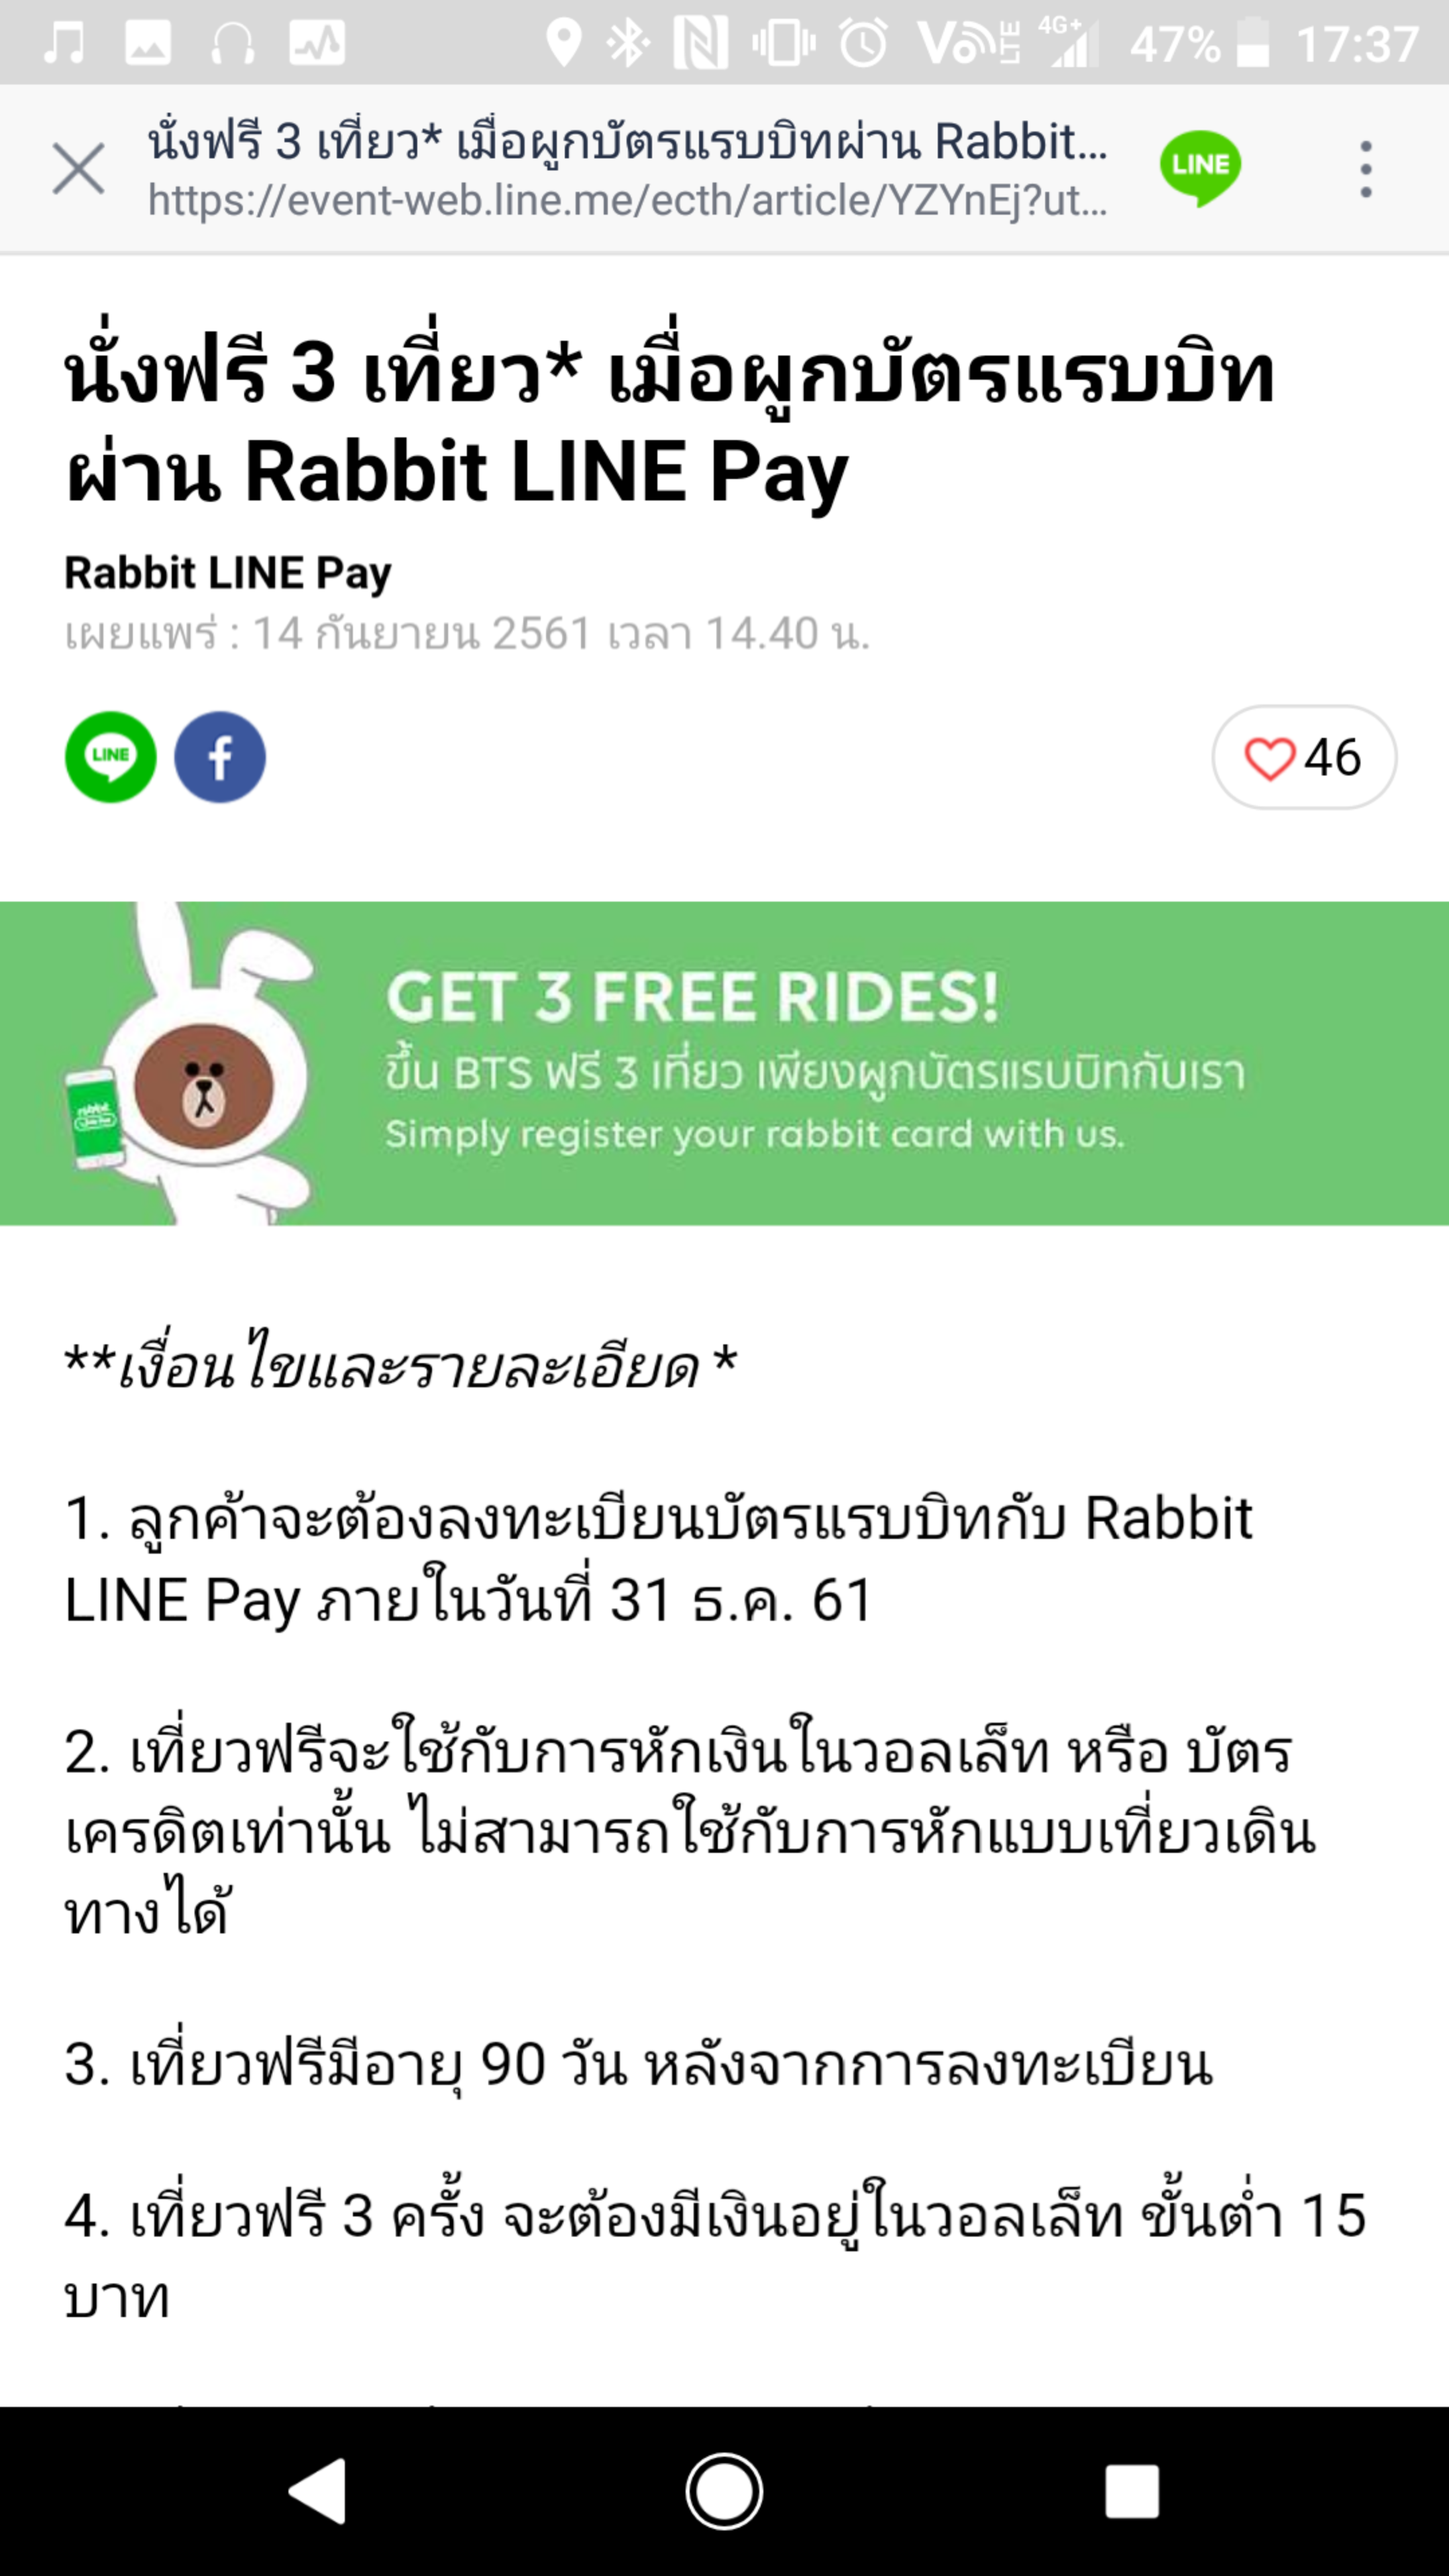 10 ข้อควรรู้ก่อน เปิดใช้งานเติมเงิน-เติมเที่ยวบัตร BTS ผ่าน Rabbit LINE Pay